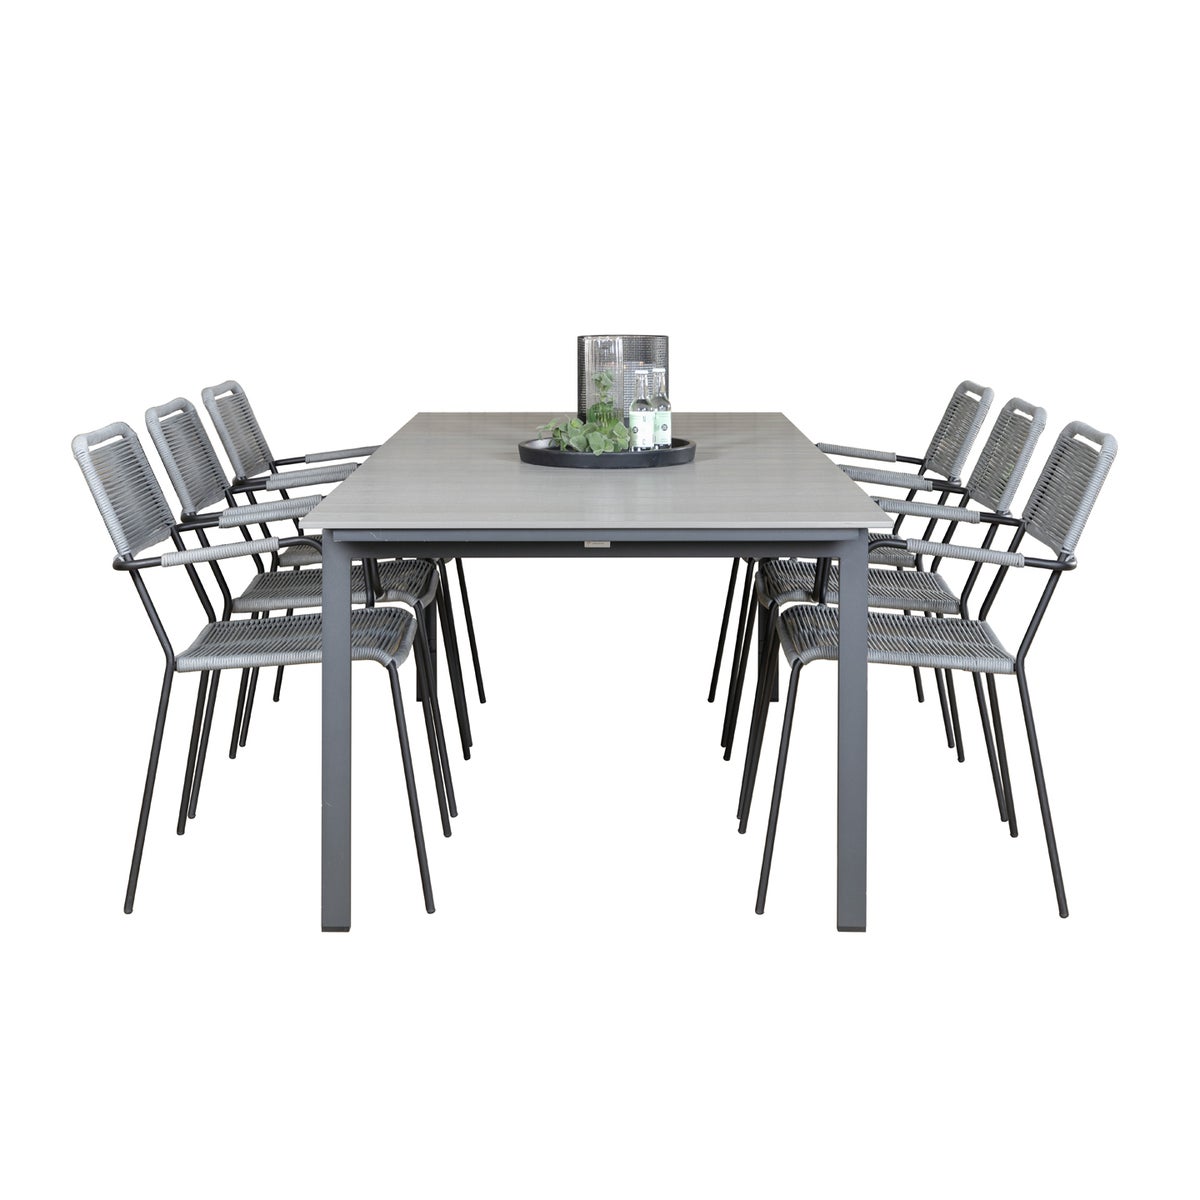 Levels Gartenset Tisch 100x229/310cm und 6 Stühle Armlehne Lindos schwarz, grau.